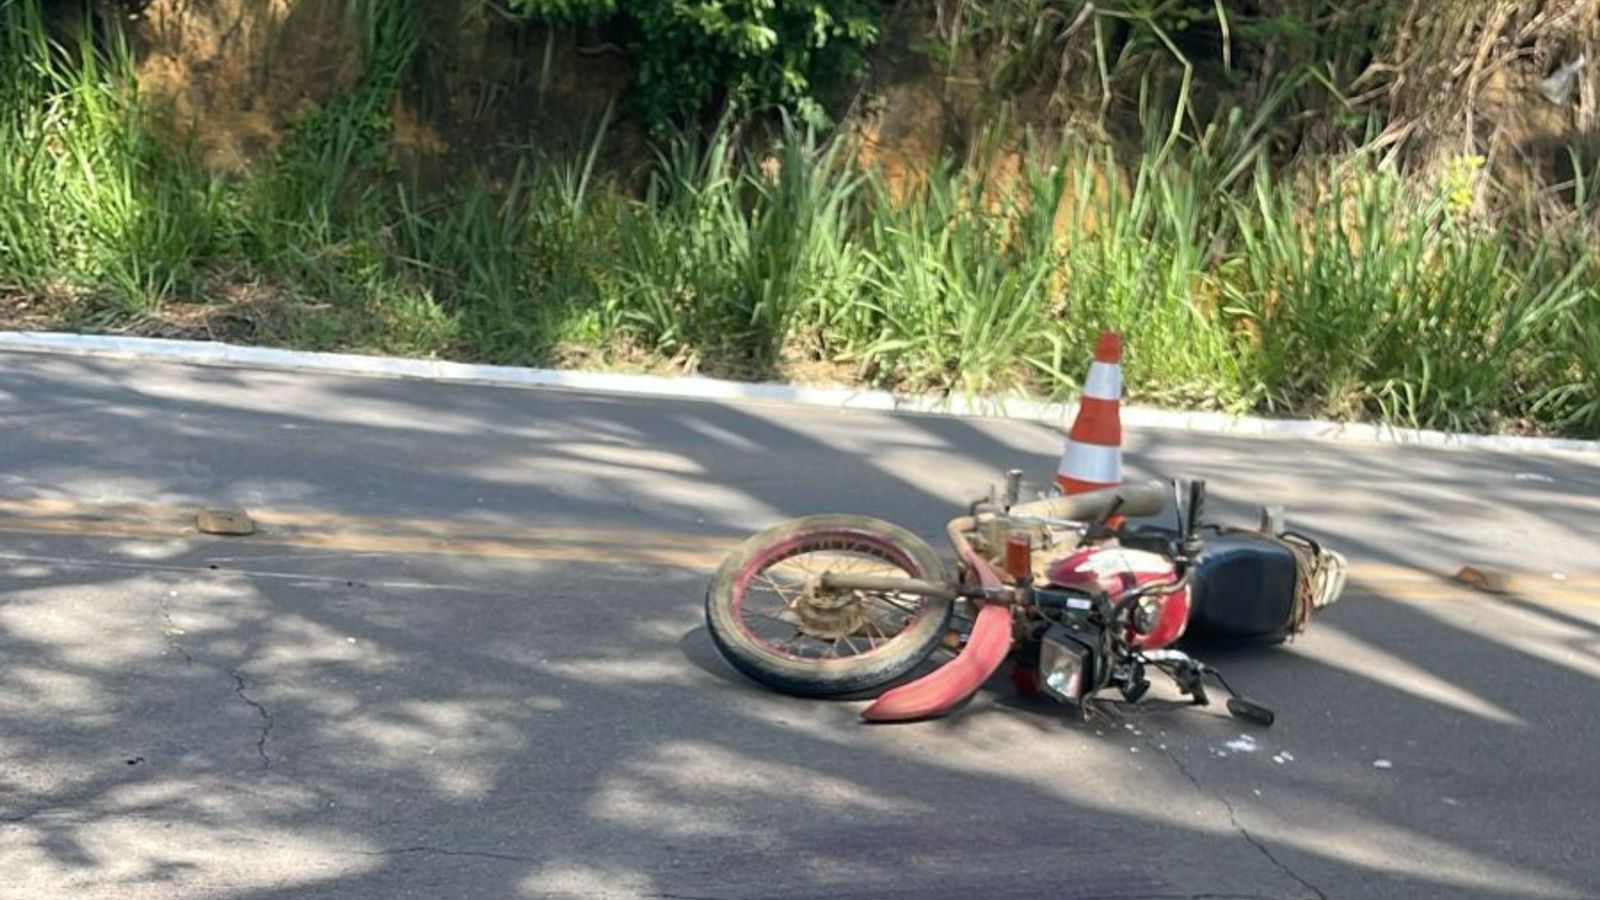 Gelson Leandro Domingos, de 53 anos, morreu em acidente entre a moto que ele conduzia e um carro, no bairro São Cristóvão, na tarde deste sábado (6)